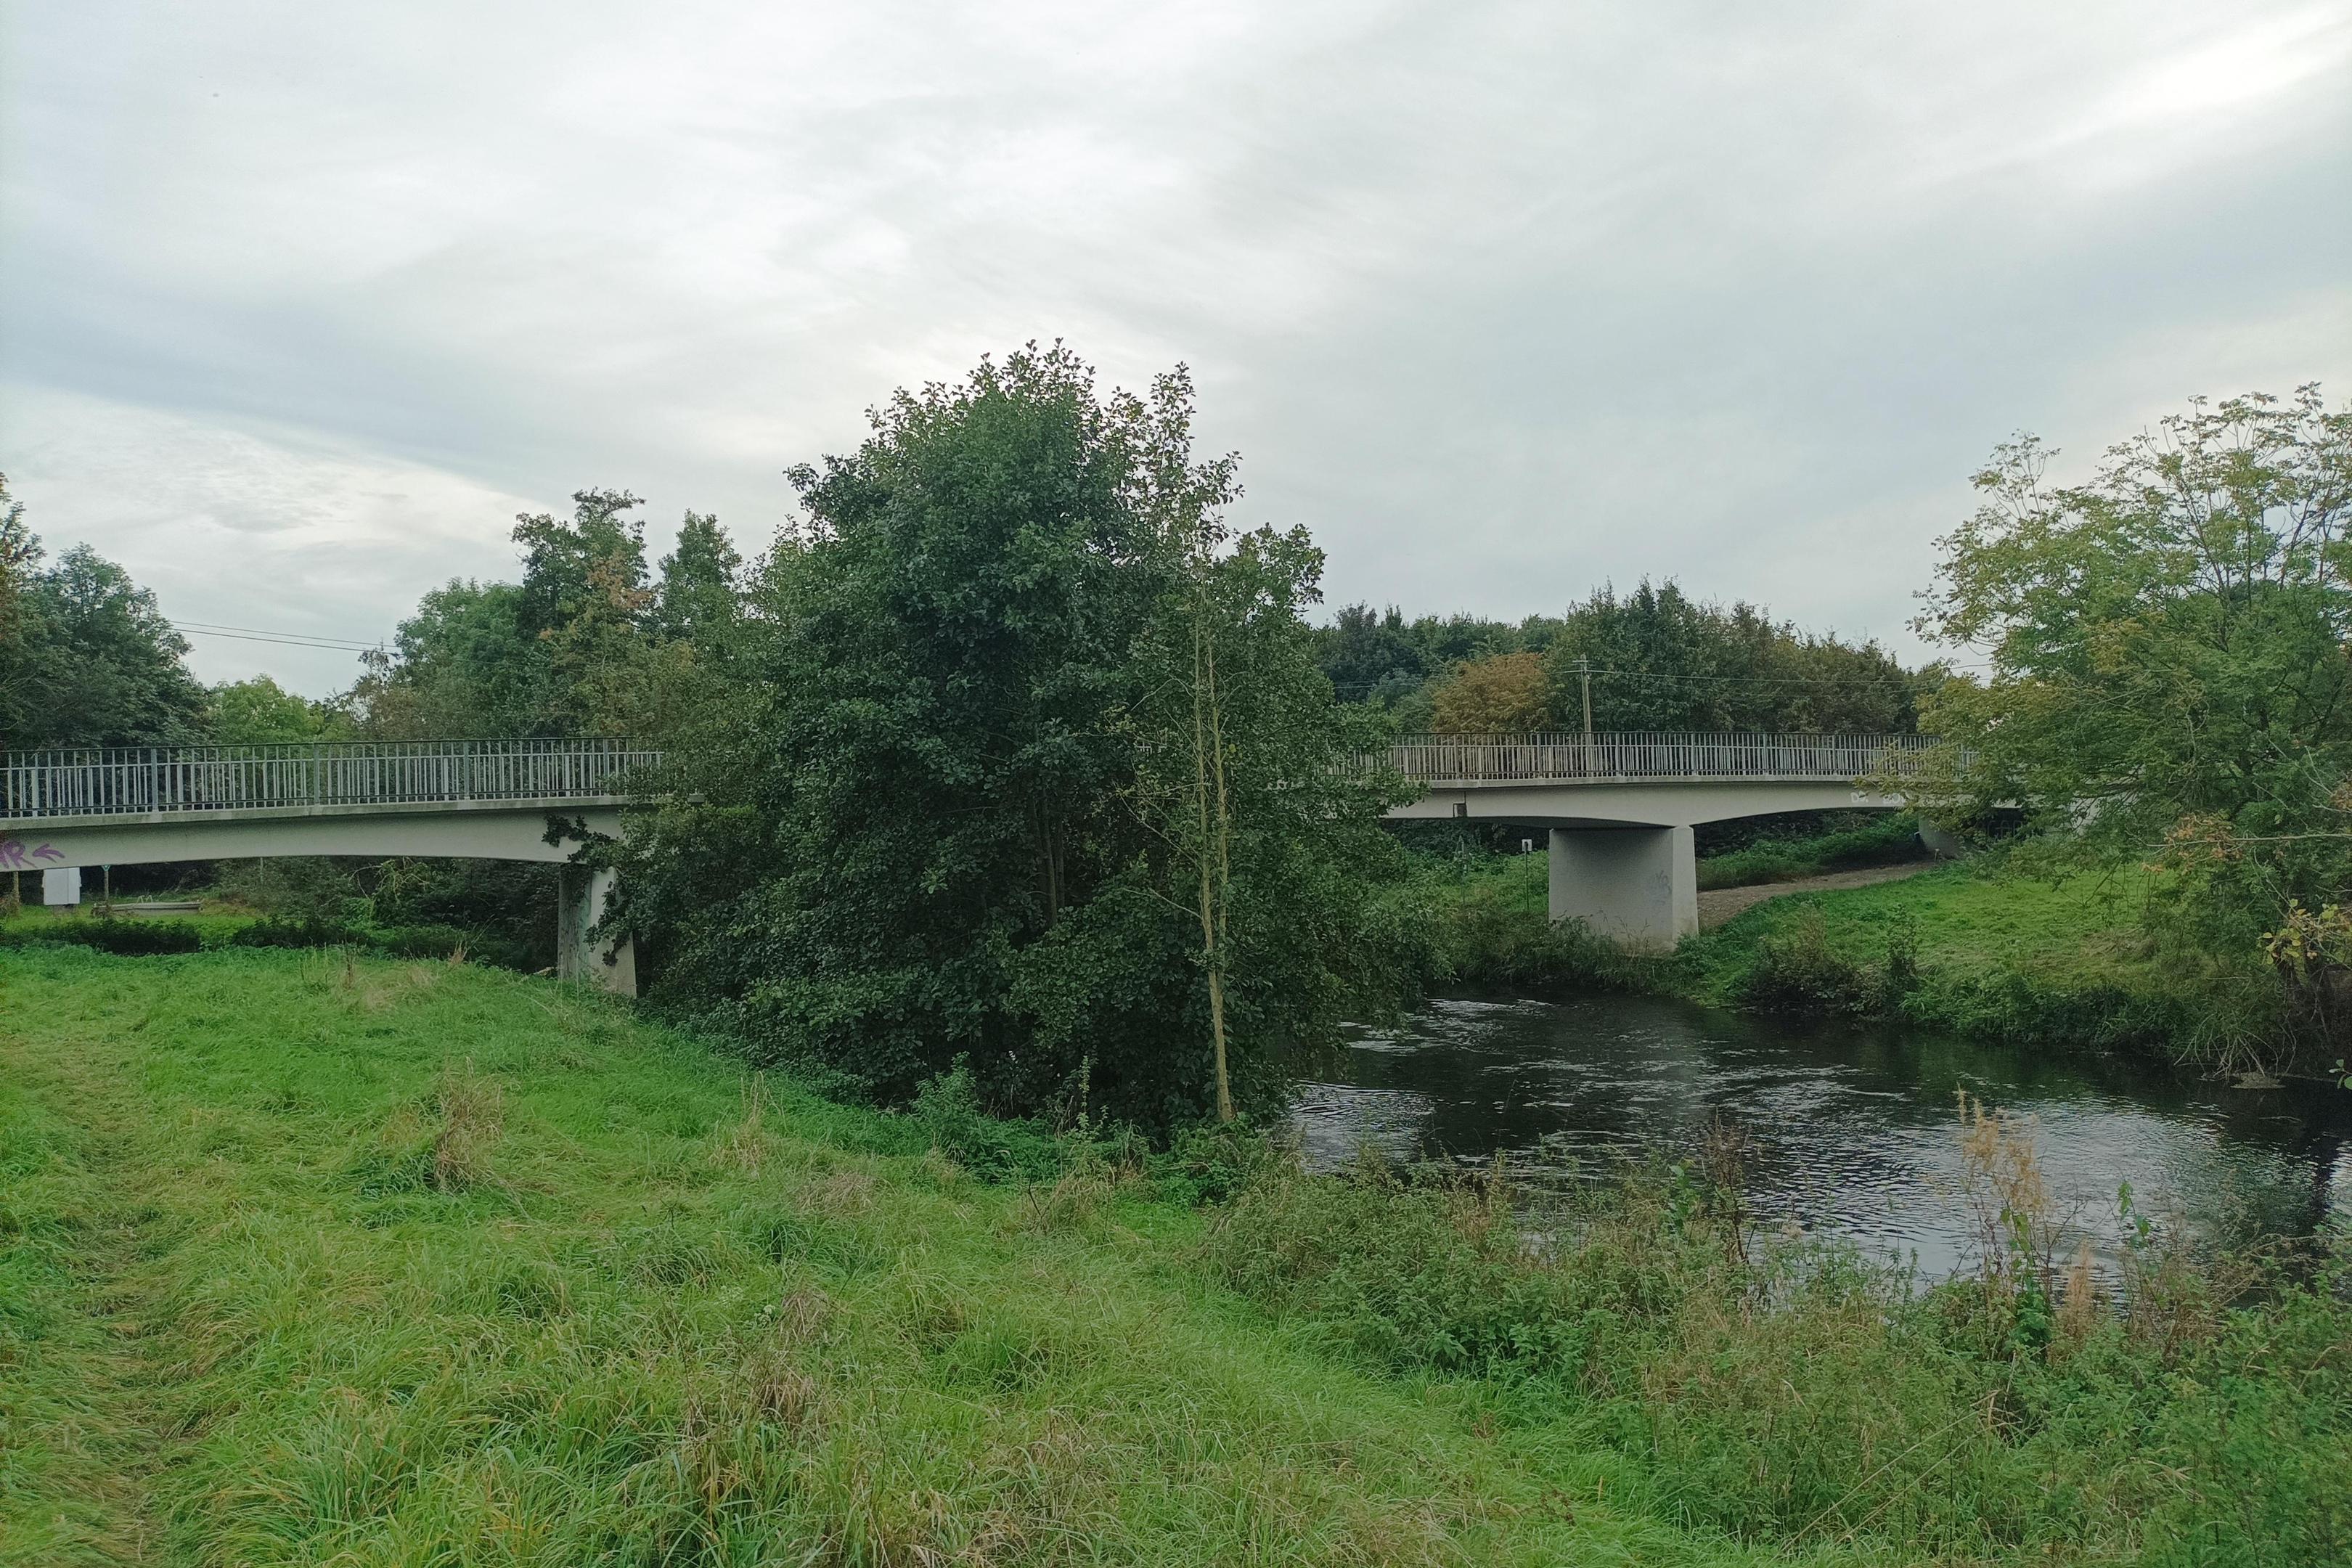 Die Körrenziger Brücke (Foto) ist die kleinere der beiden Rurbrücken. Für ihren Neubau setzen die Planer aber mehr Zeit an als für die deutlich größere Heinrich-Weitz-Brücke in der Kernstadt.